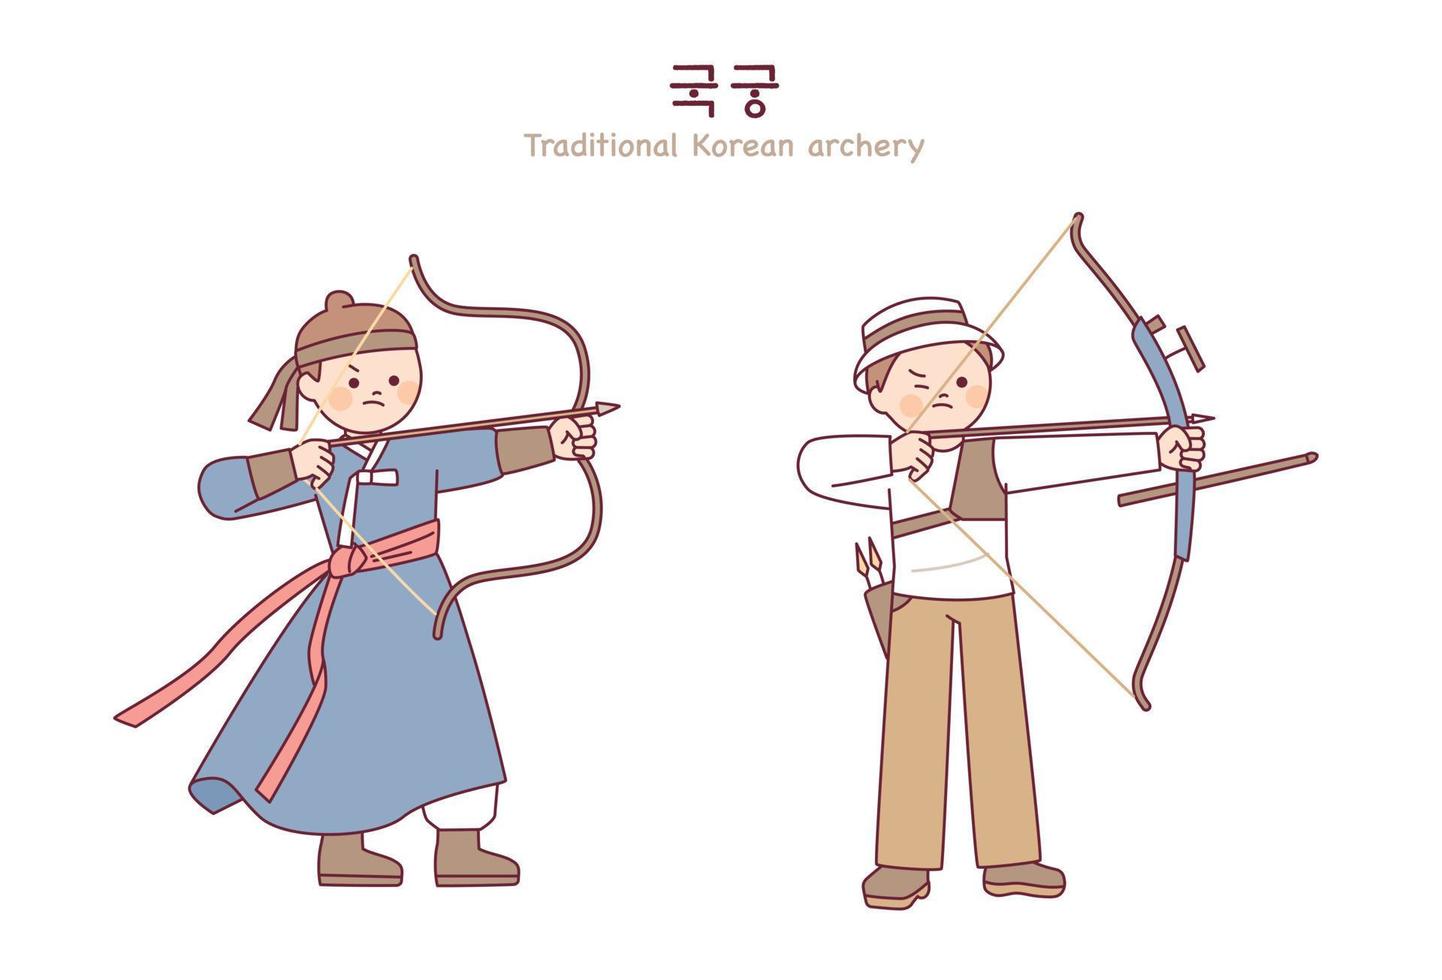 arqueiros coreanos do passado e arqueiros modernos. um personagem fofo puxando uma corda de arco. vetor